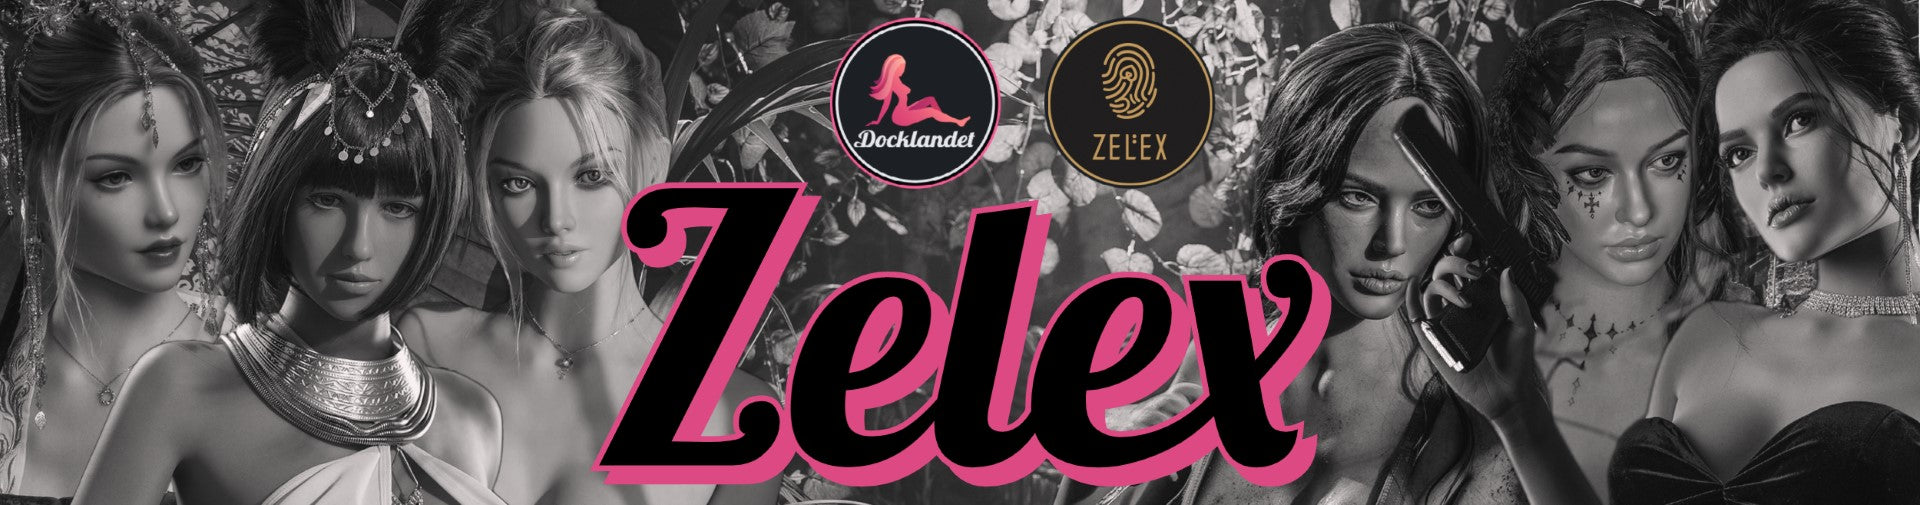 Zelex ovat todellisten nukke- ja seksinukkejen asiantuntijoita. Heidän nuket on valmistettu ehdottomasti korkealaatuisimmasta TPE:stä ja silikonista (tuodu Yhdysvalloista). Osta Zelex real doll klo Docklandet tänään. Zelex on yksi Kiinan johtavista todentuntuisten nukkejen valmistajista.